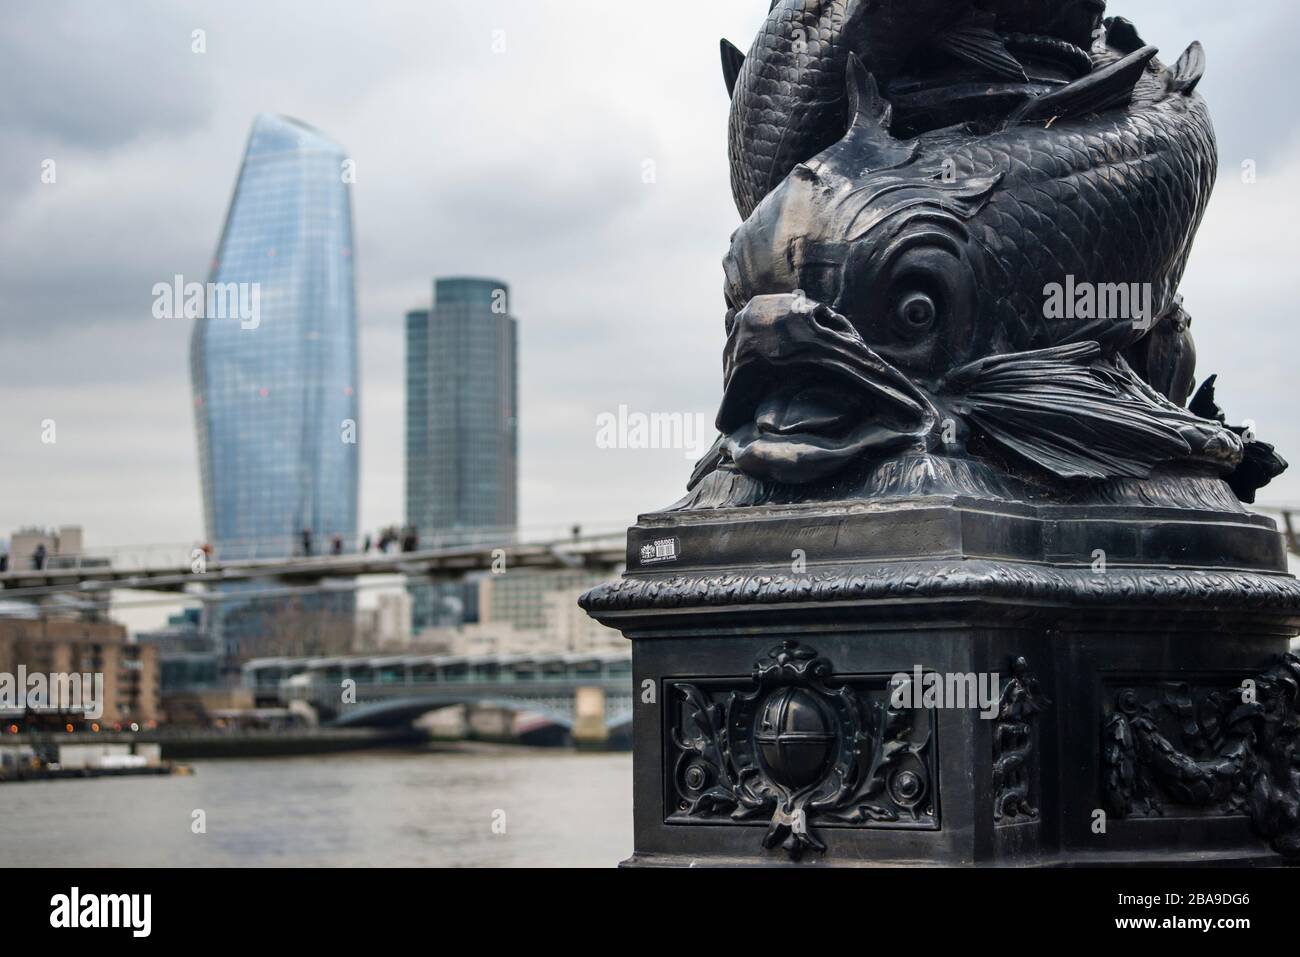 Lampadaire orné de poissons en fonte avec un bâtiment Blackfriars (Boomerang) et un bâtiment Southbank Tower en arrière-plan, Londres, Royaume-Uni Banque D'Images